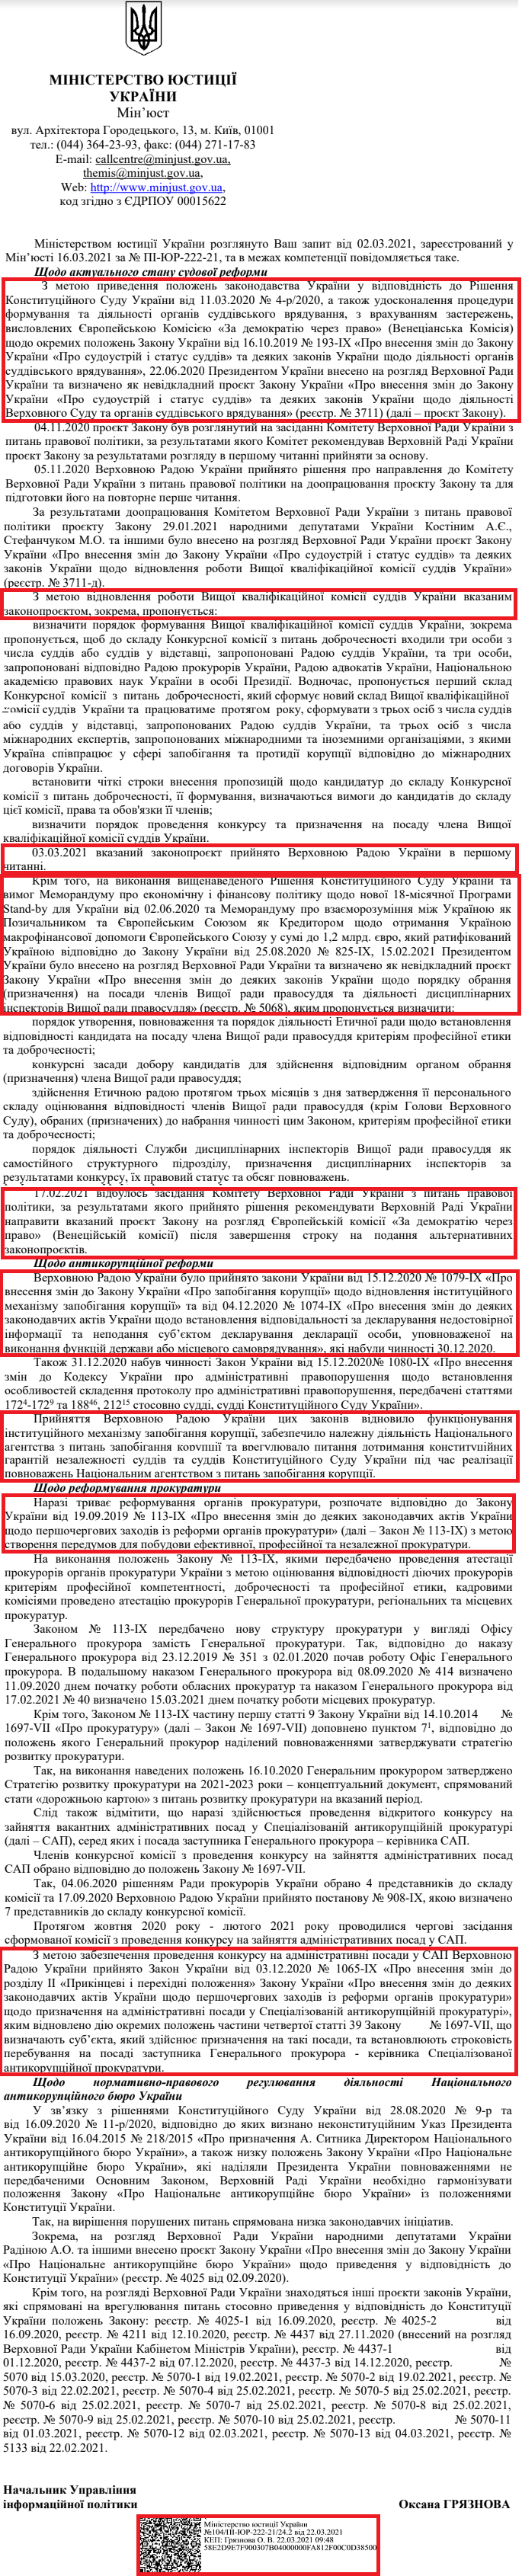 Лист Міністерства юстиції україни від 22 березня 2021 року 